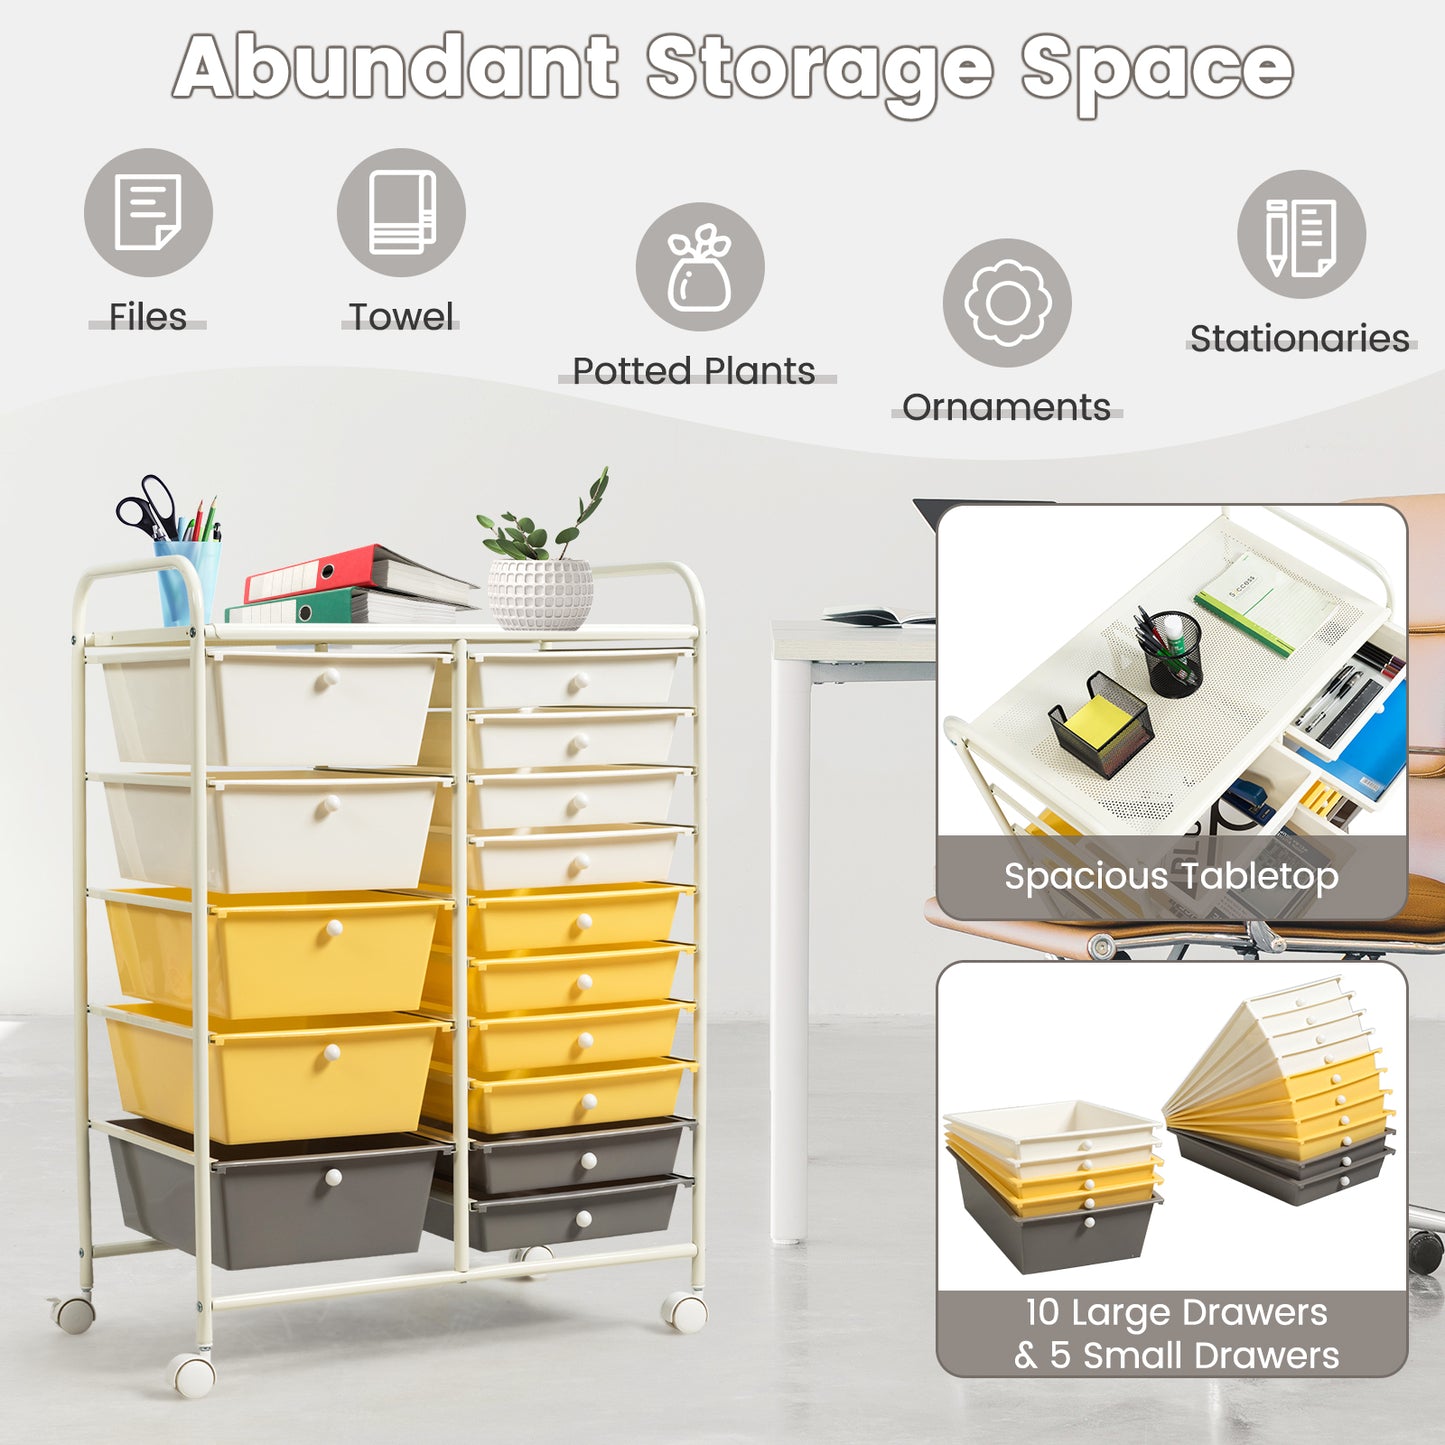 15-Drawer Storage Rolling Organizer Cart-Yellow